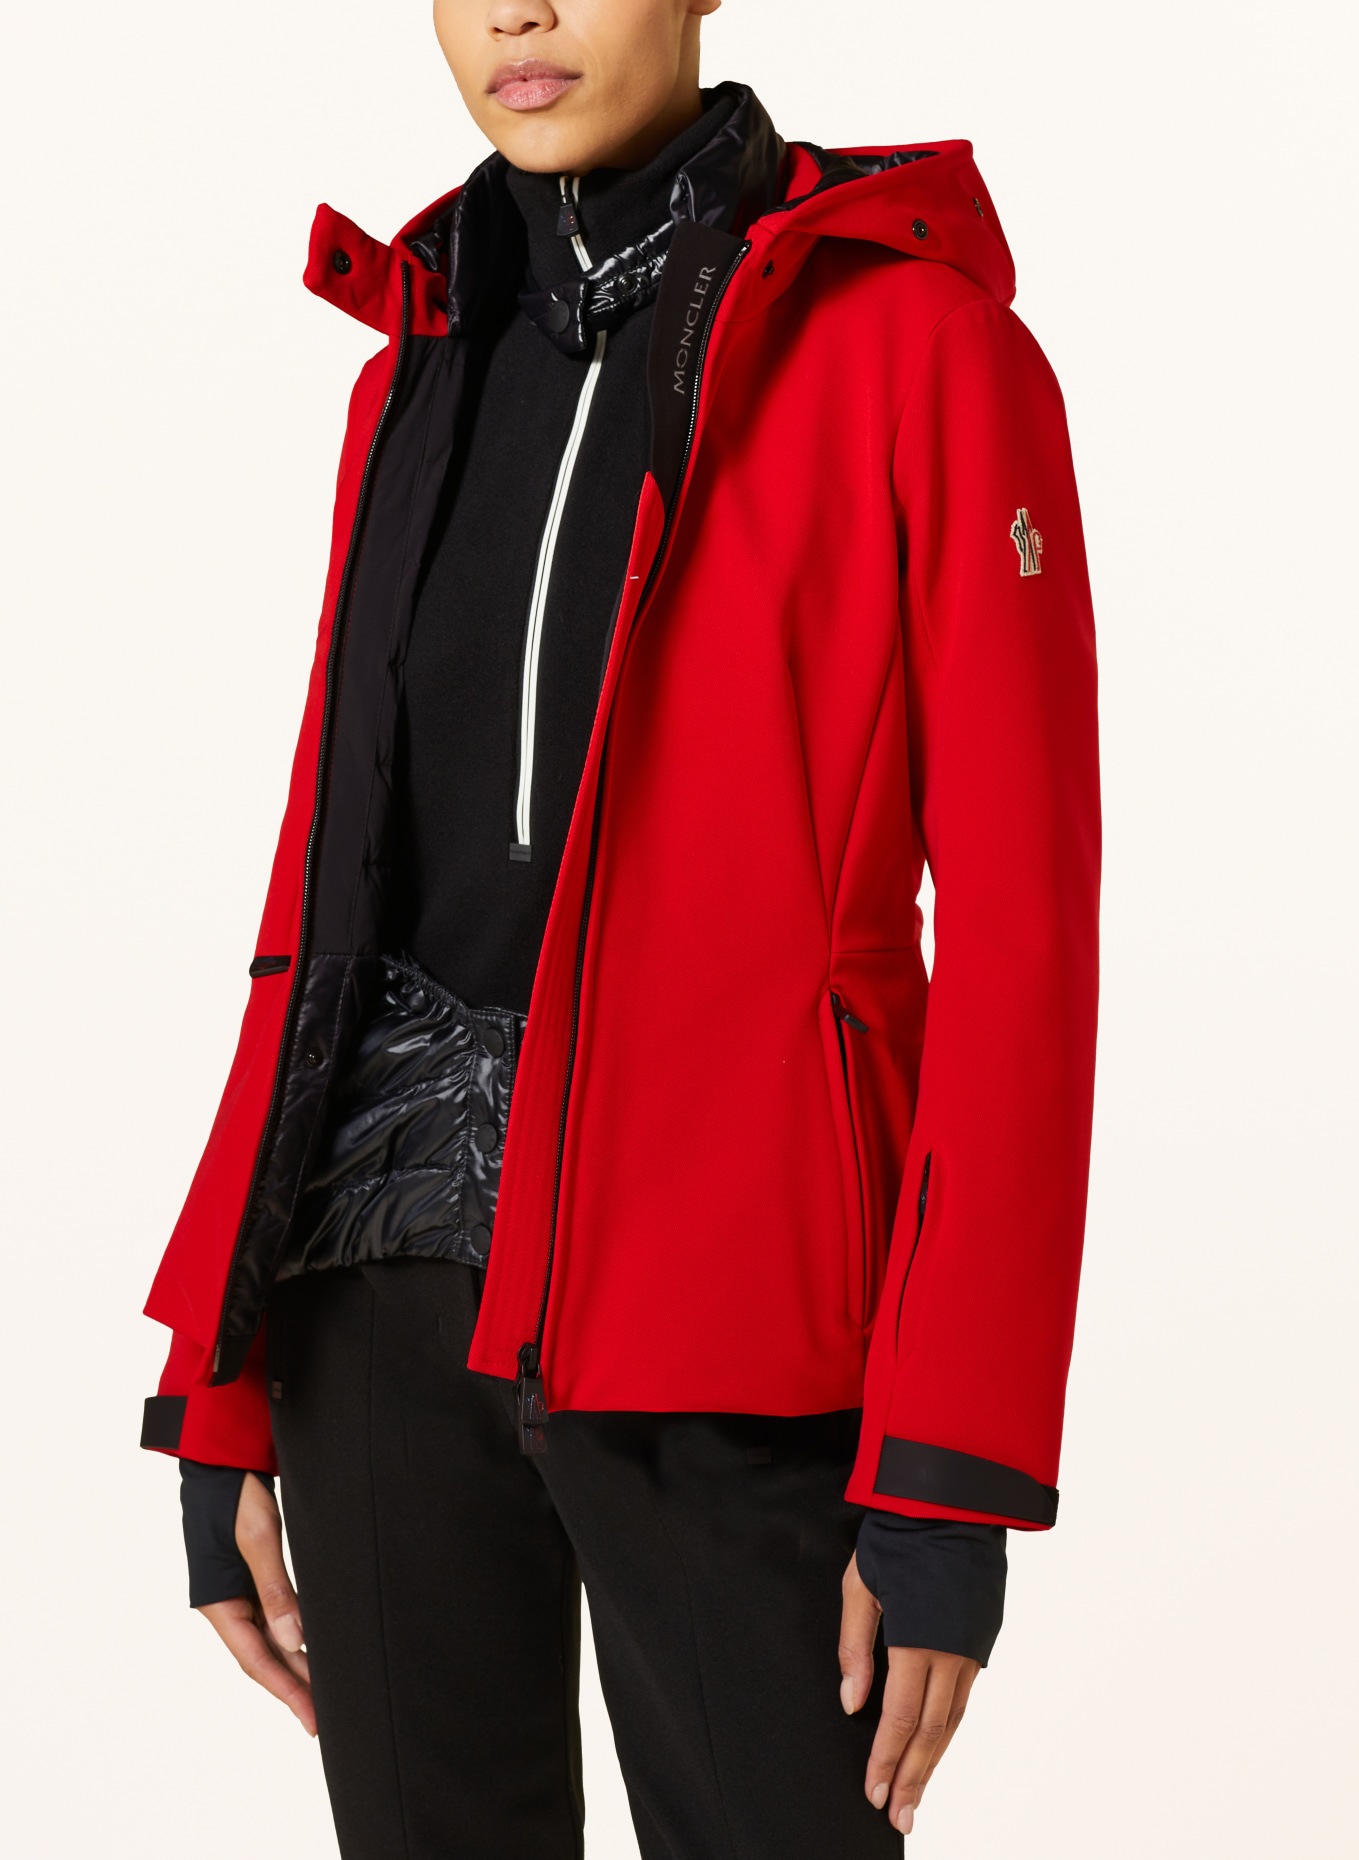 MONCLER GRENOBLE Ski jacket, Color: RED (Image 6)